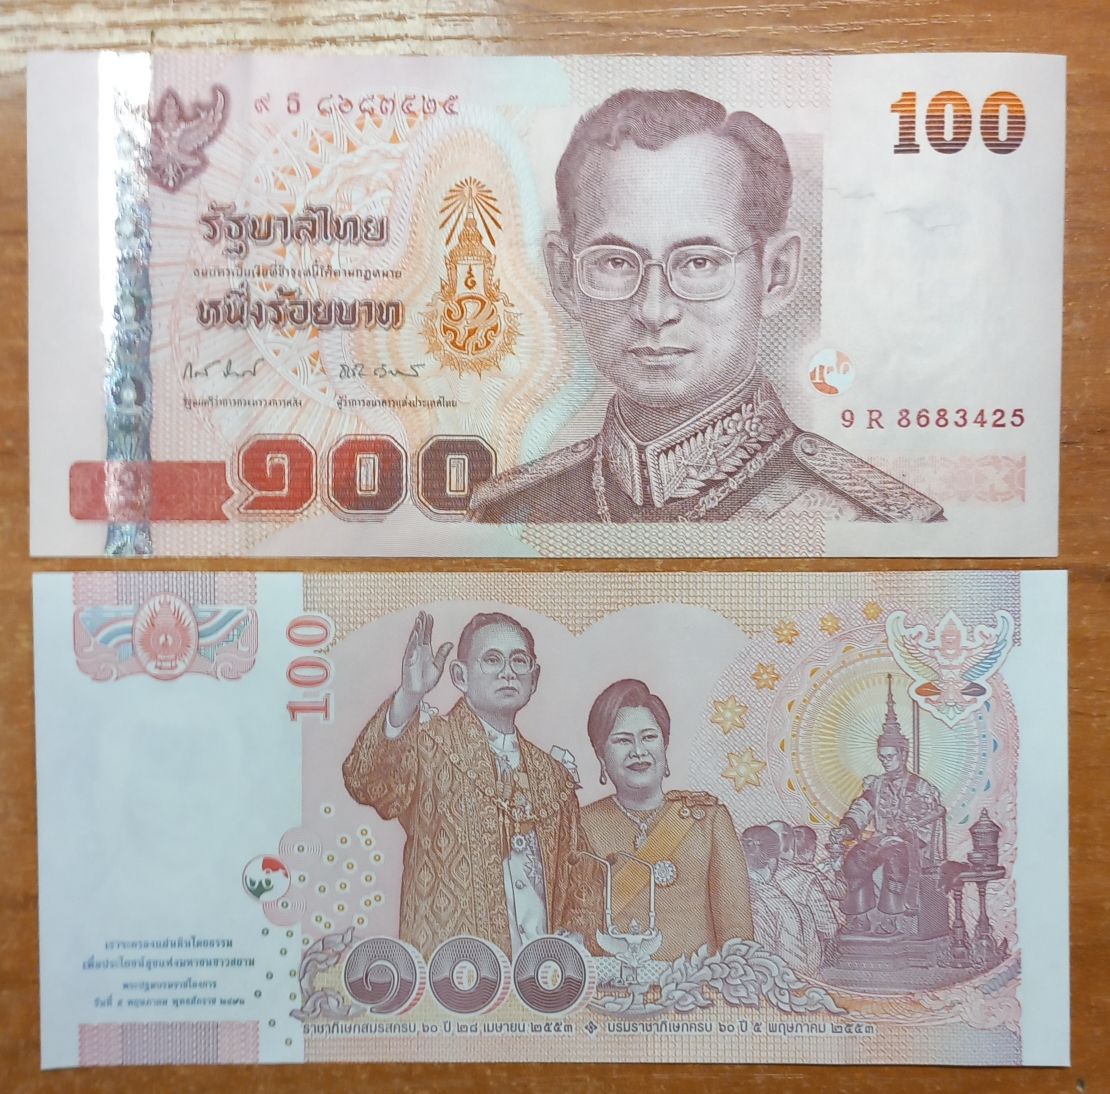 60 батов в рублях. Банкноты Тайланда. 100 Тайских бат. Юбилейные банкноты Таиланда. Юбилейные баты Таиланда.